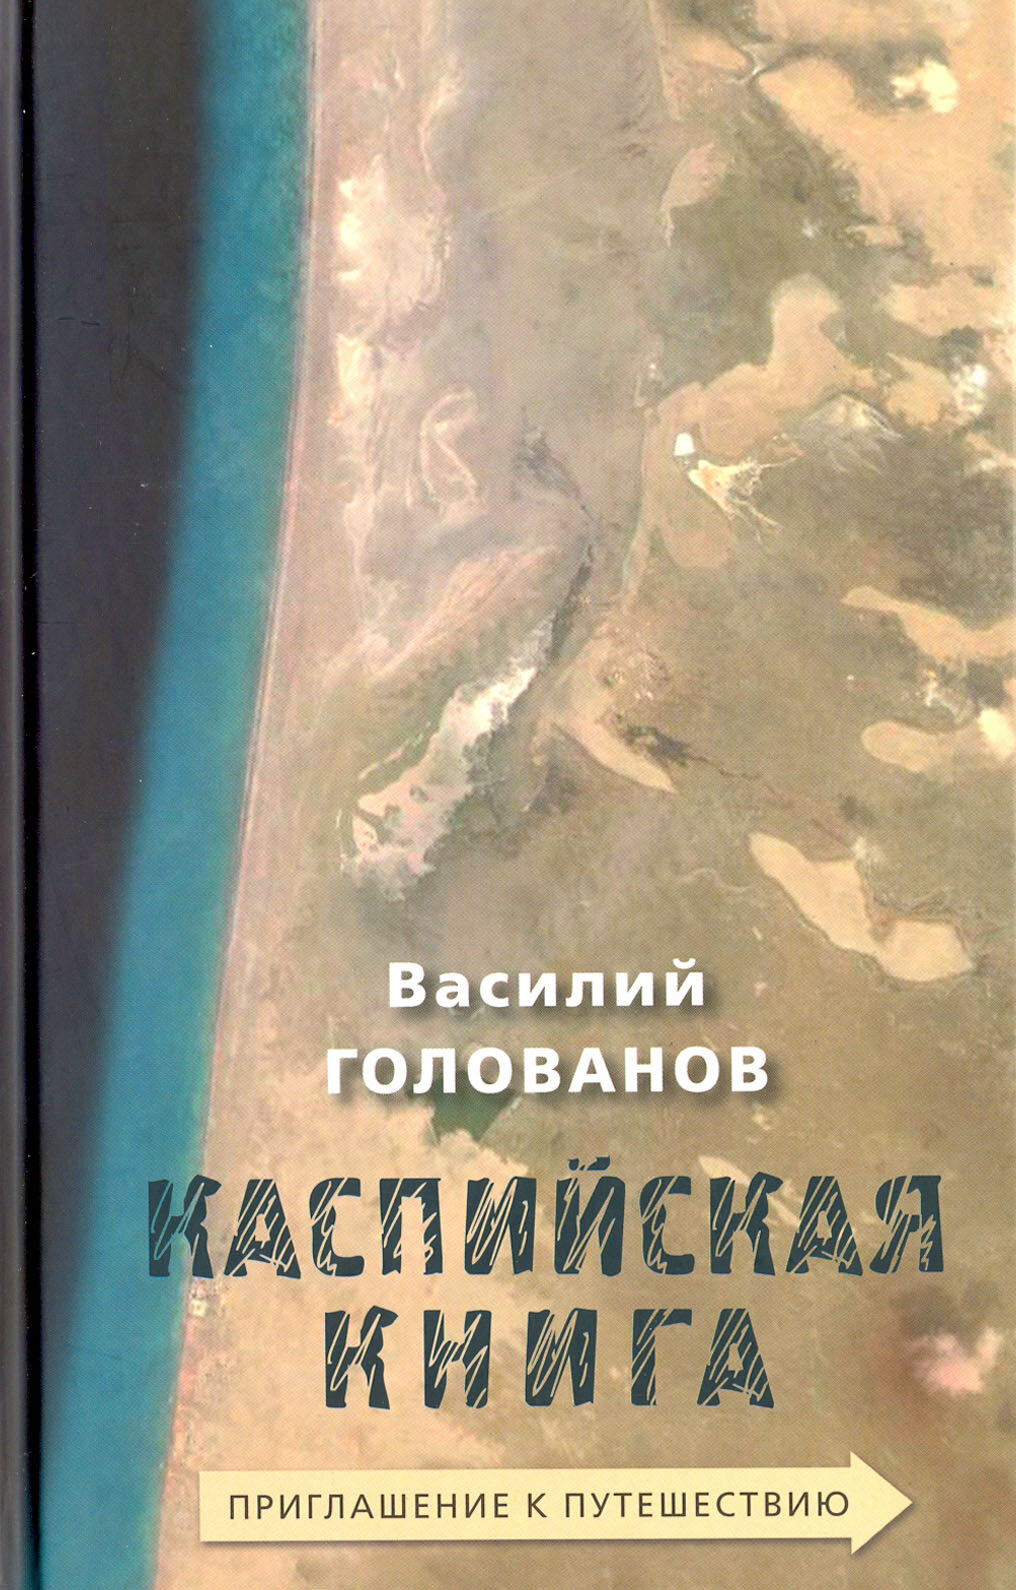 Каспийская книга. Приглашение к путешествию - фото №2